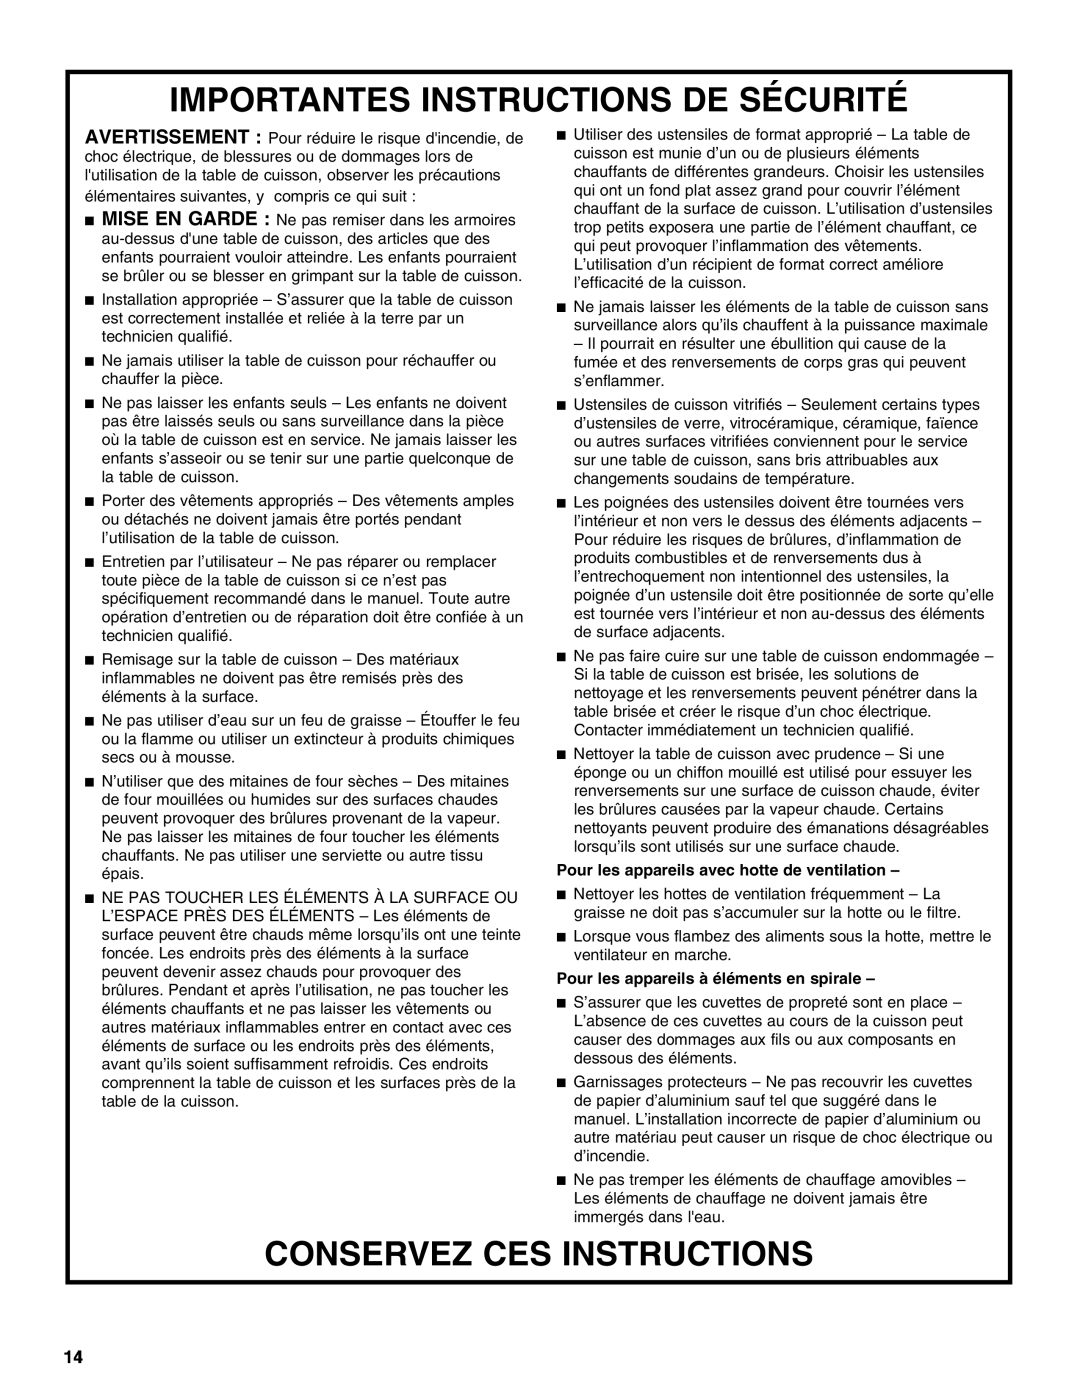 Jenn-Air W10141605 manual Importantes Instructions De Sécurité, Conservez Ces Instructions 